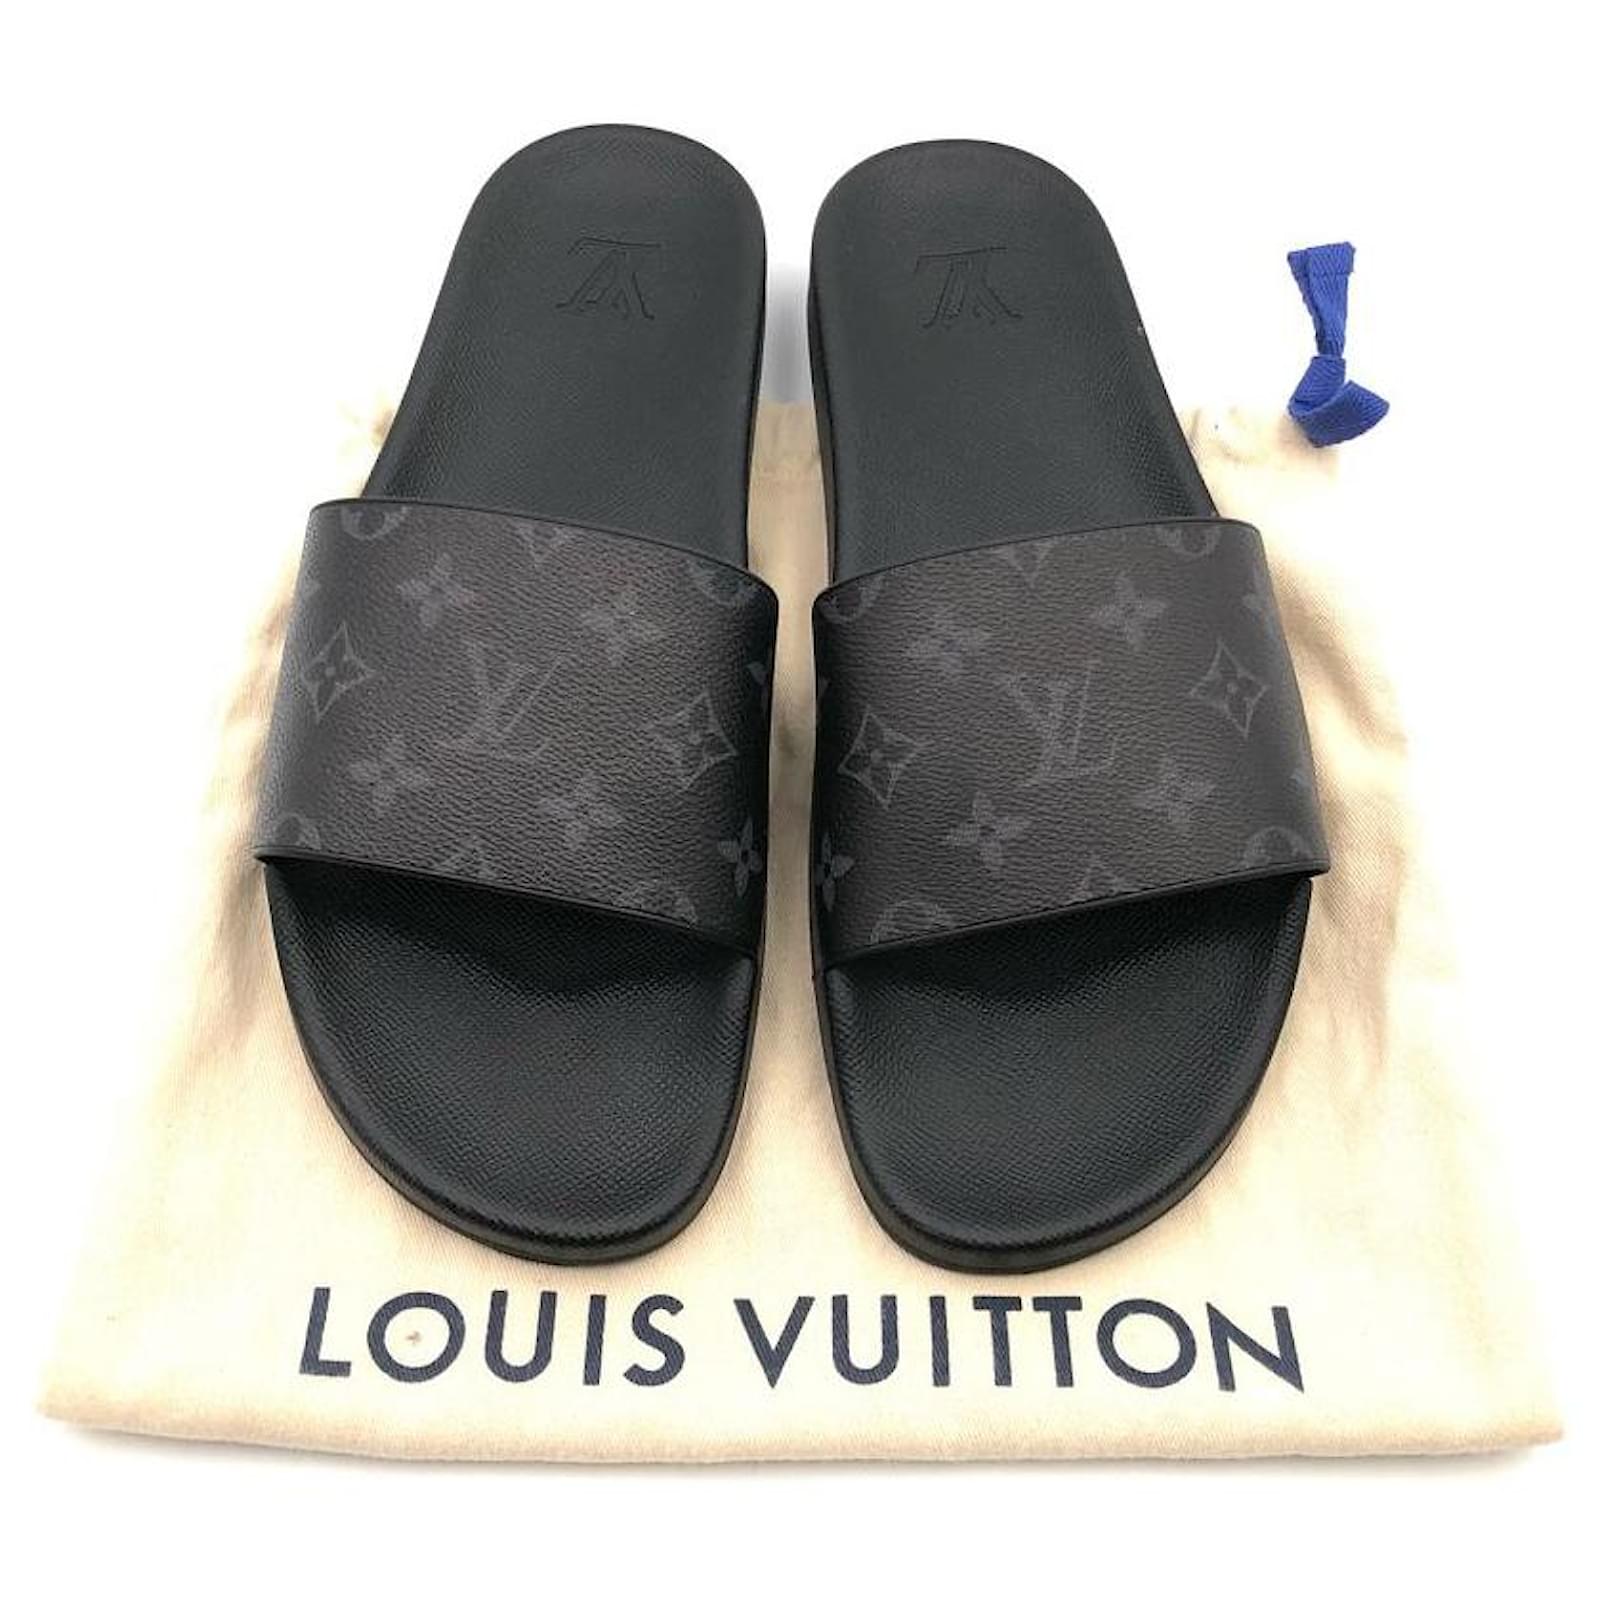 Claquette Louis Vuitton Prix on Sale, SAVE 57% 